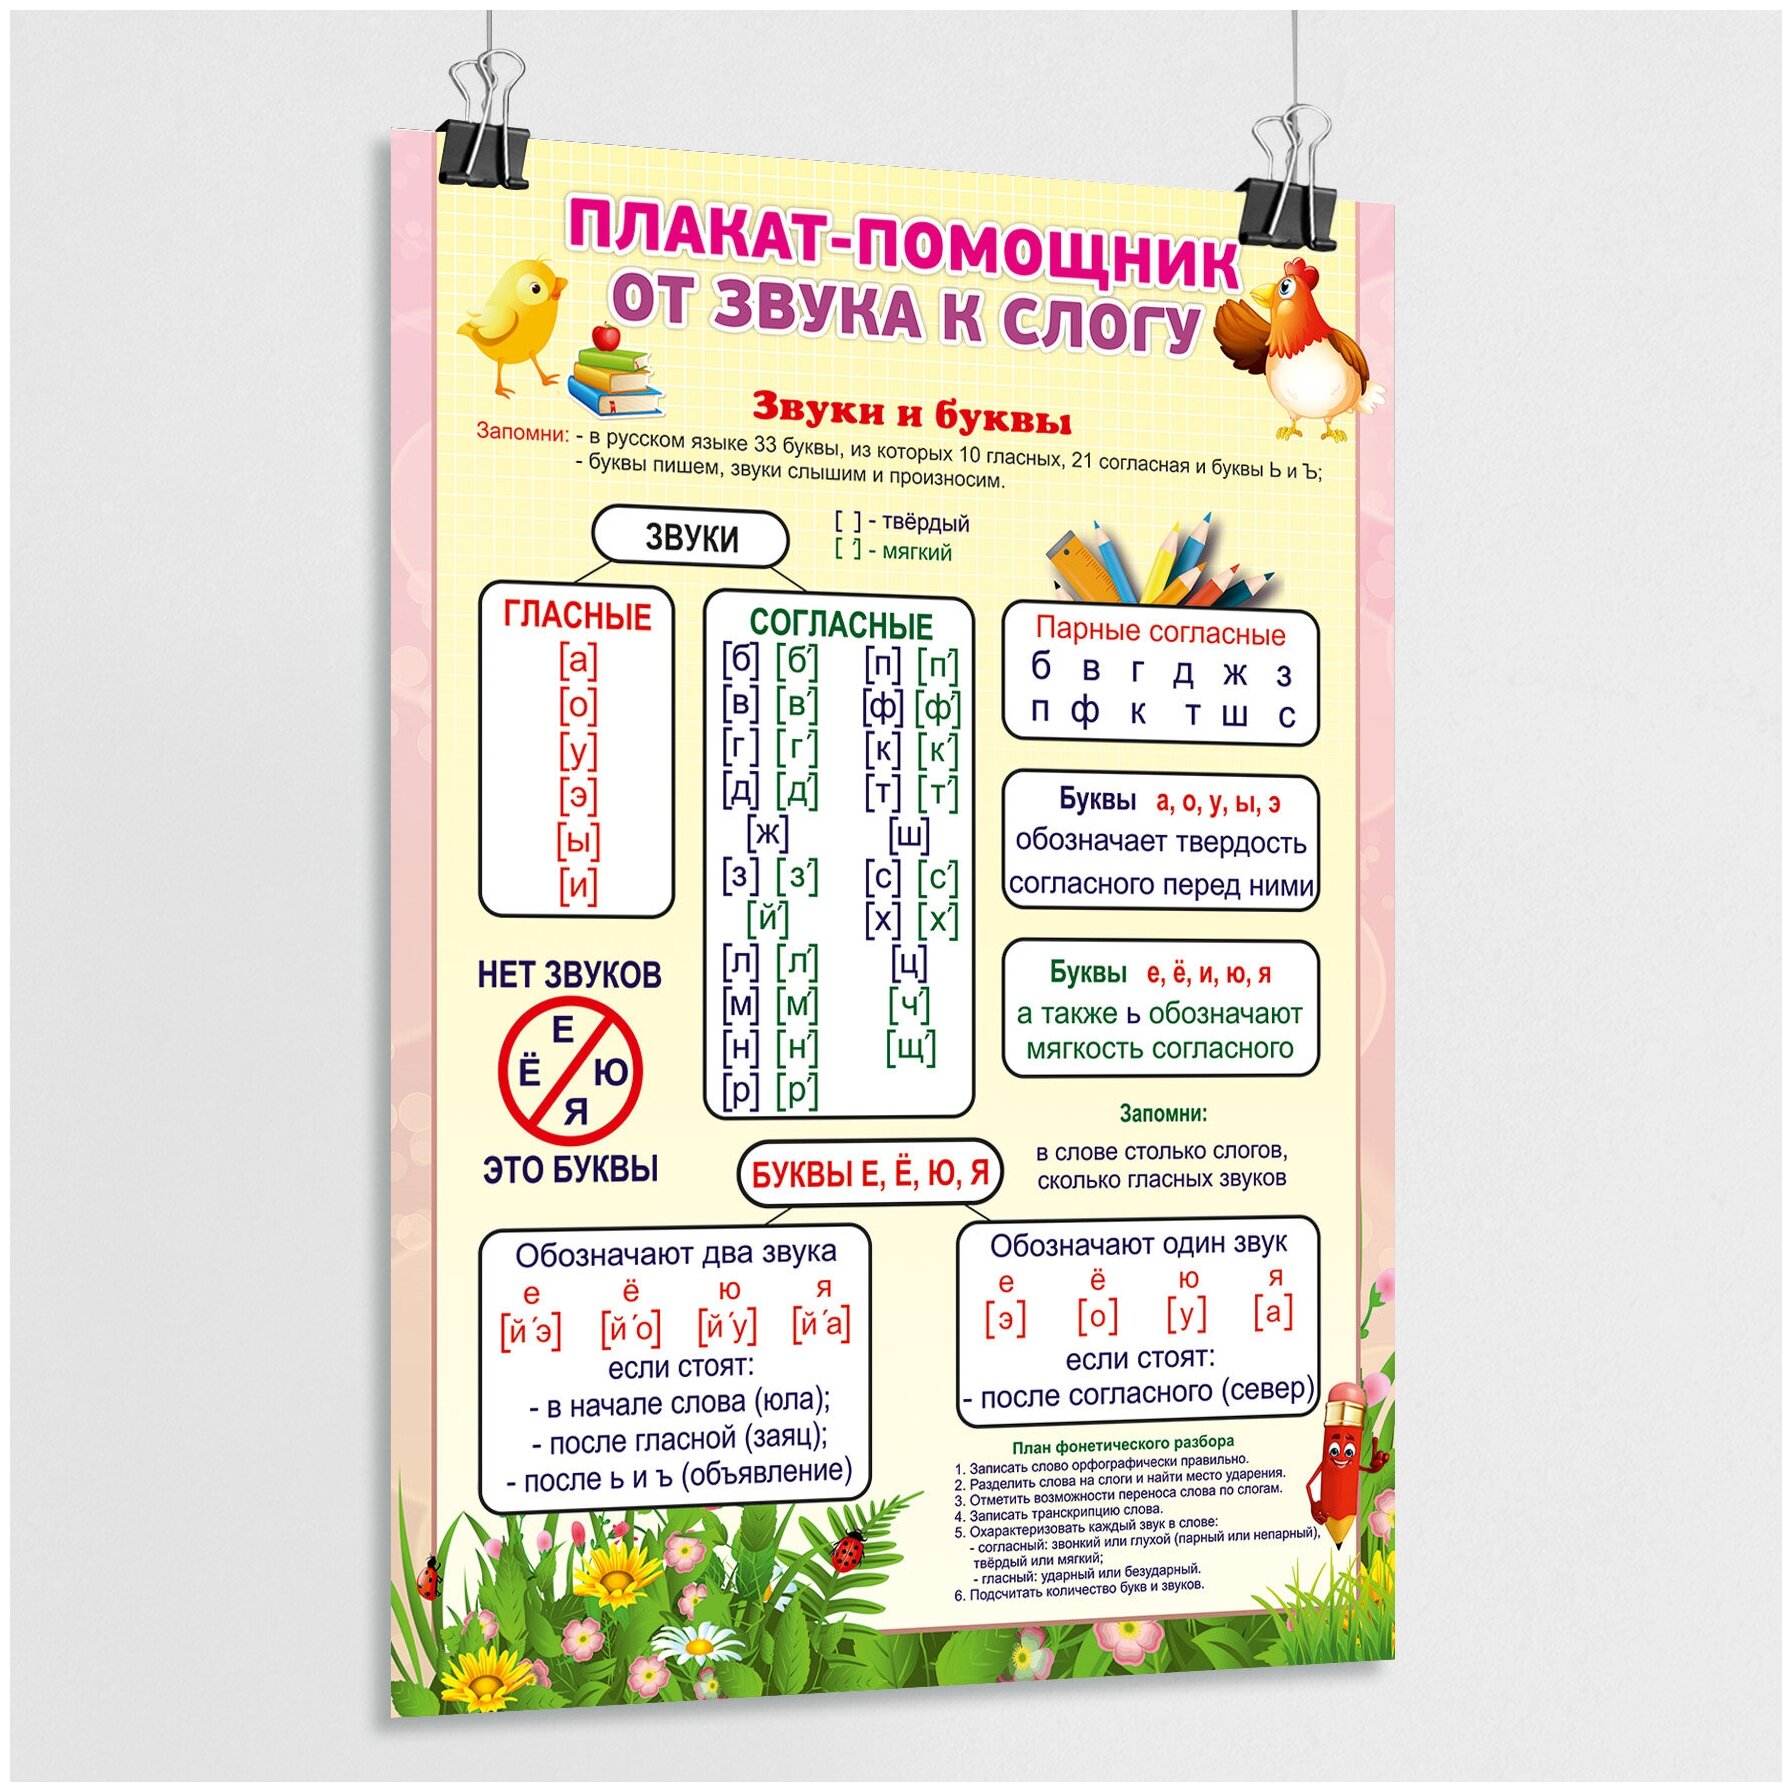 Обучающий плакат-помощник "От звука к слогу" для детей / А-2 (42x60 см.)